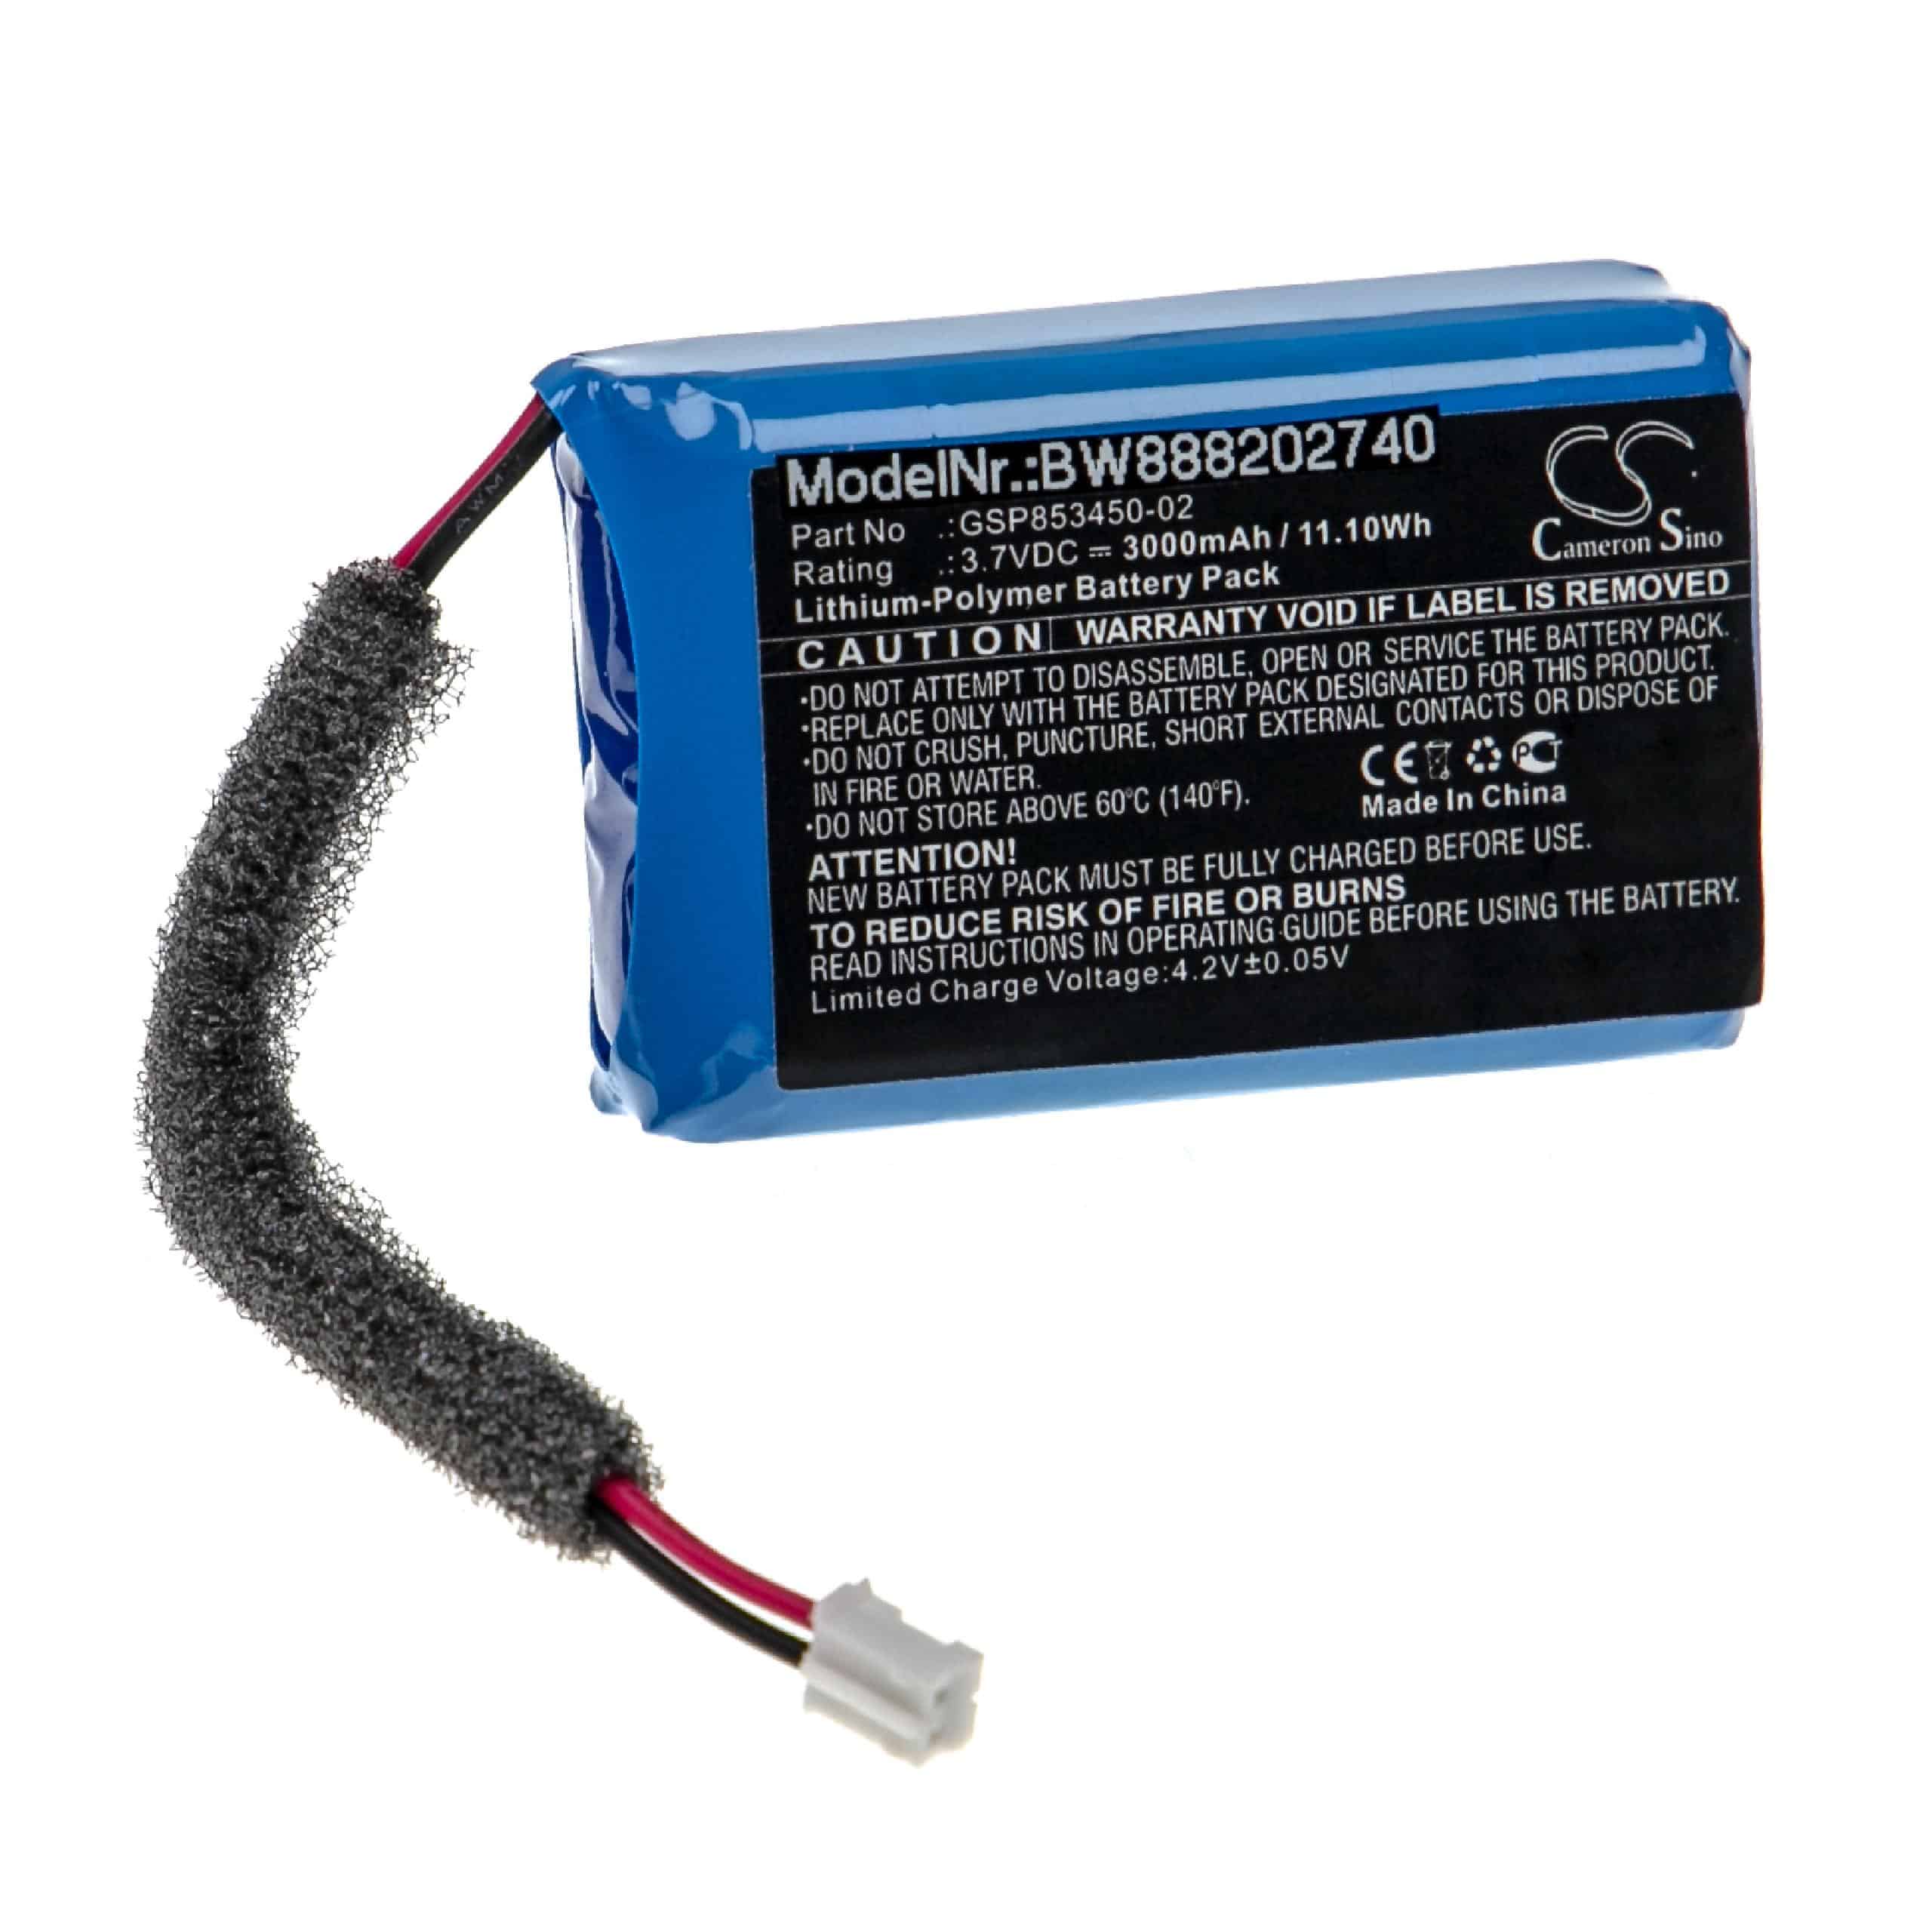  Battery replaces JBL GSP853450-02 for JBLLoudspeaker - Li-polymer 3000 mAh